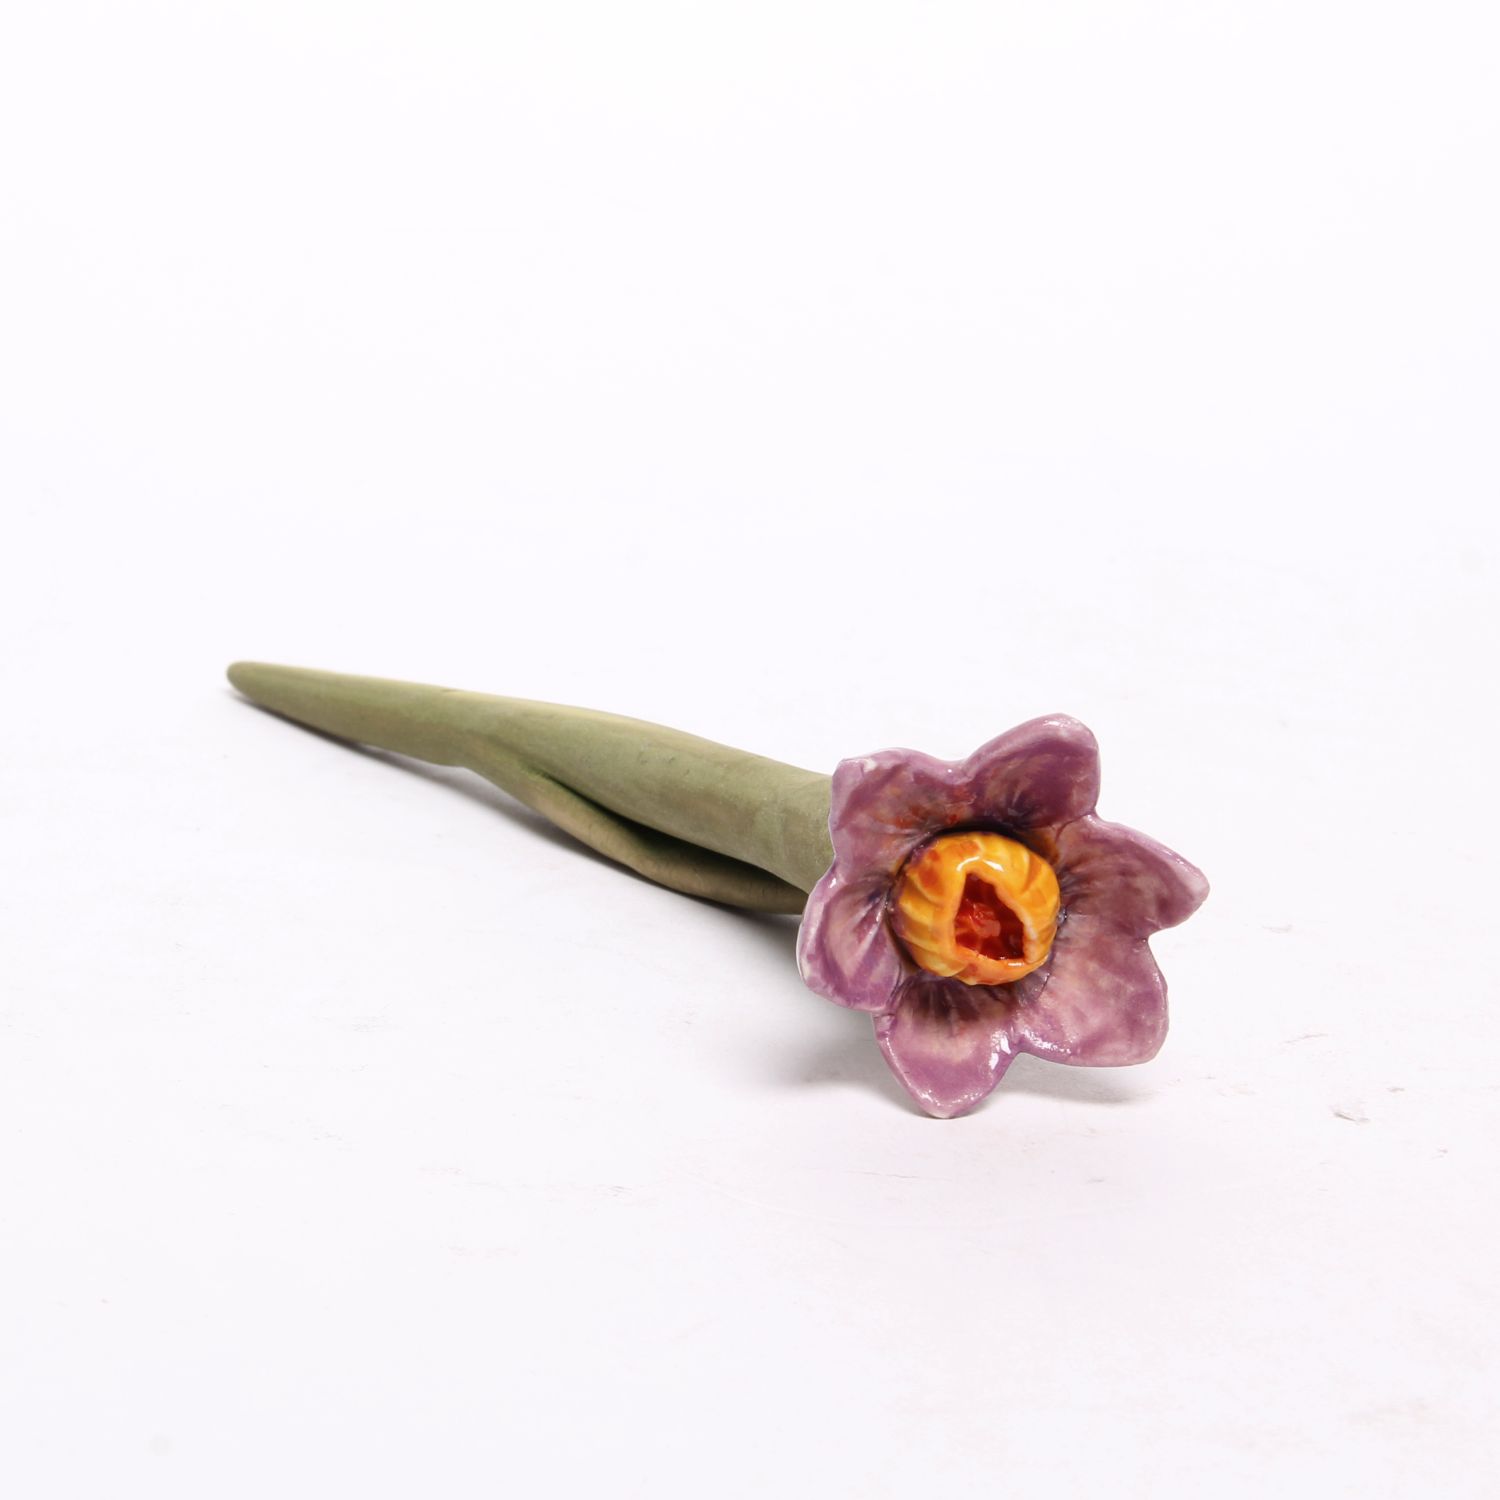 Eekta Trienekens: Narcissus Flowers (Each sold separately) Product Image 2 of 7